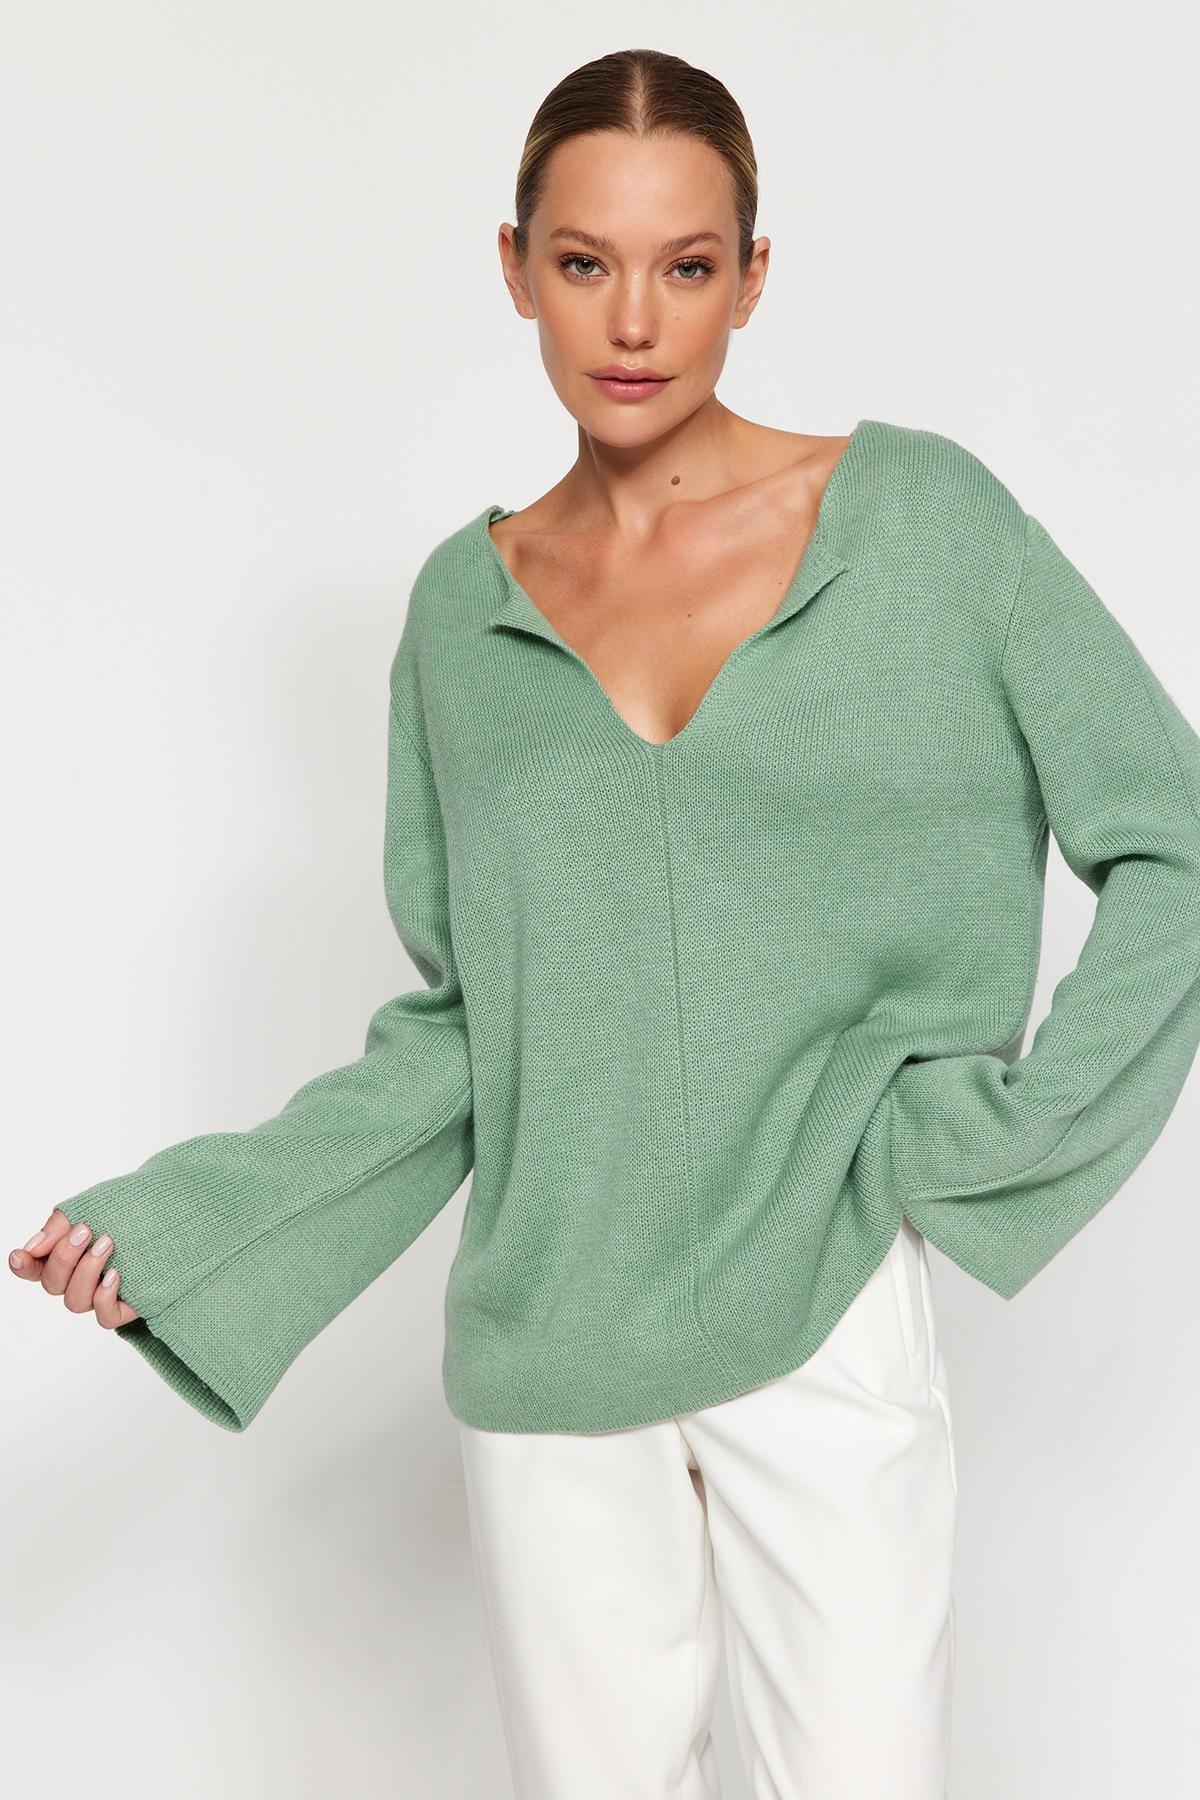 Trendyol - Green V-Neck Knitwear Sweater